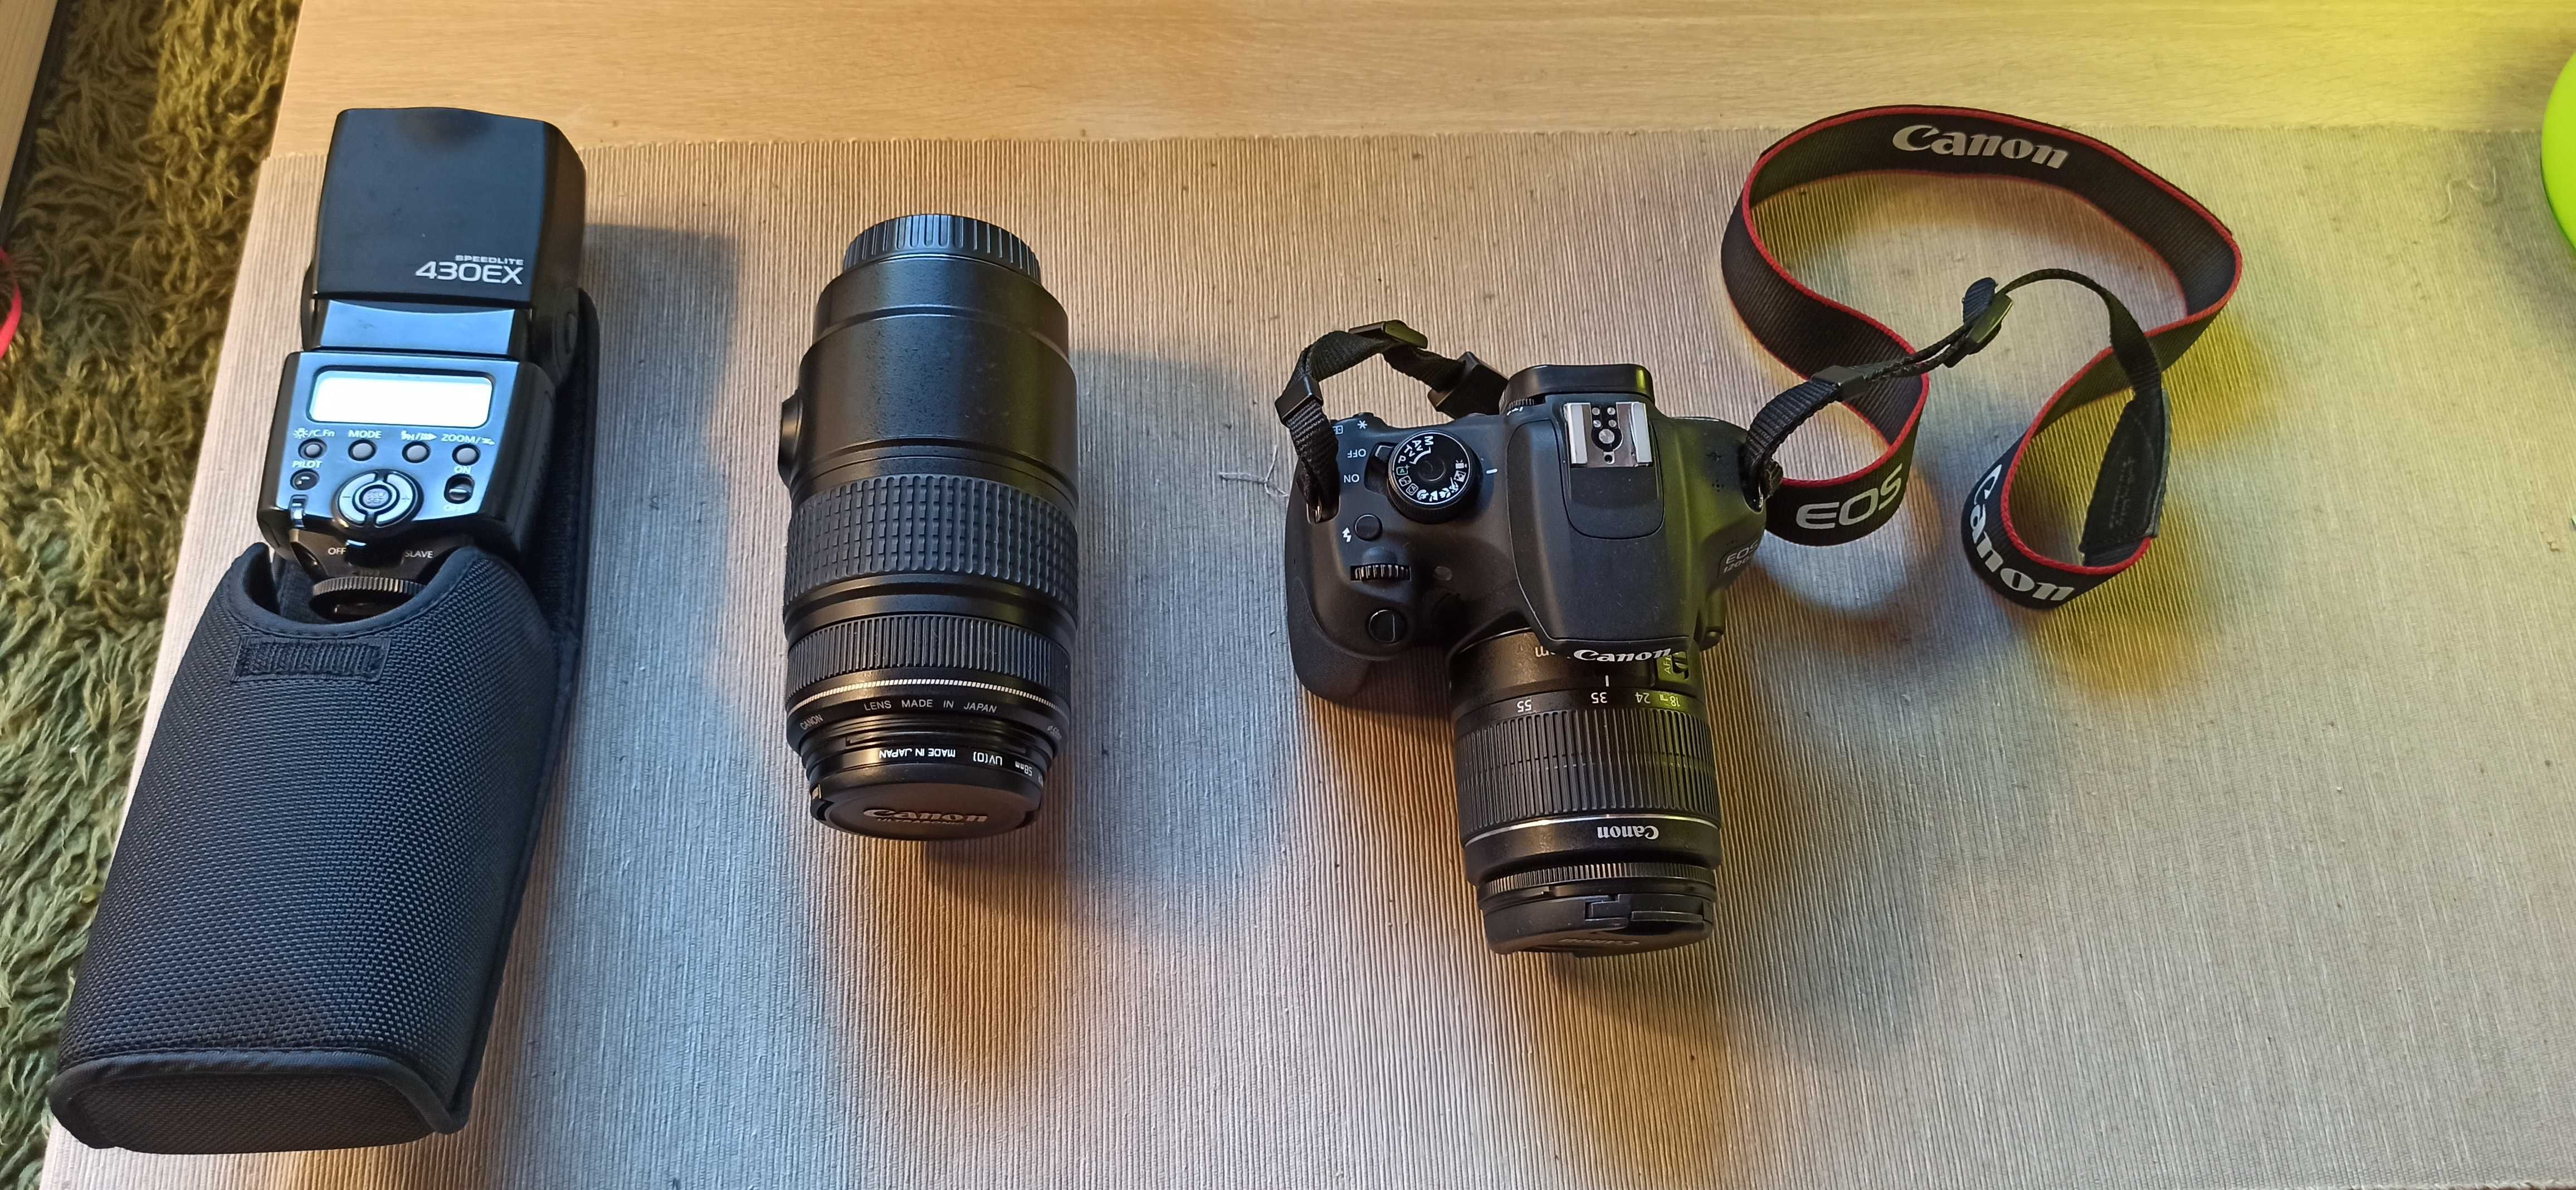 Lustrzanka: Canon  EOS 1200d + obiektyw 18-55 3.5-5.6 +obiektyw makro